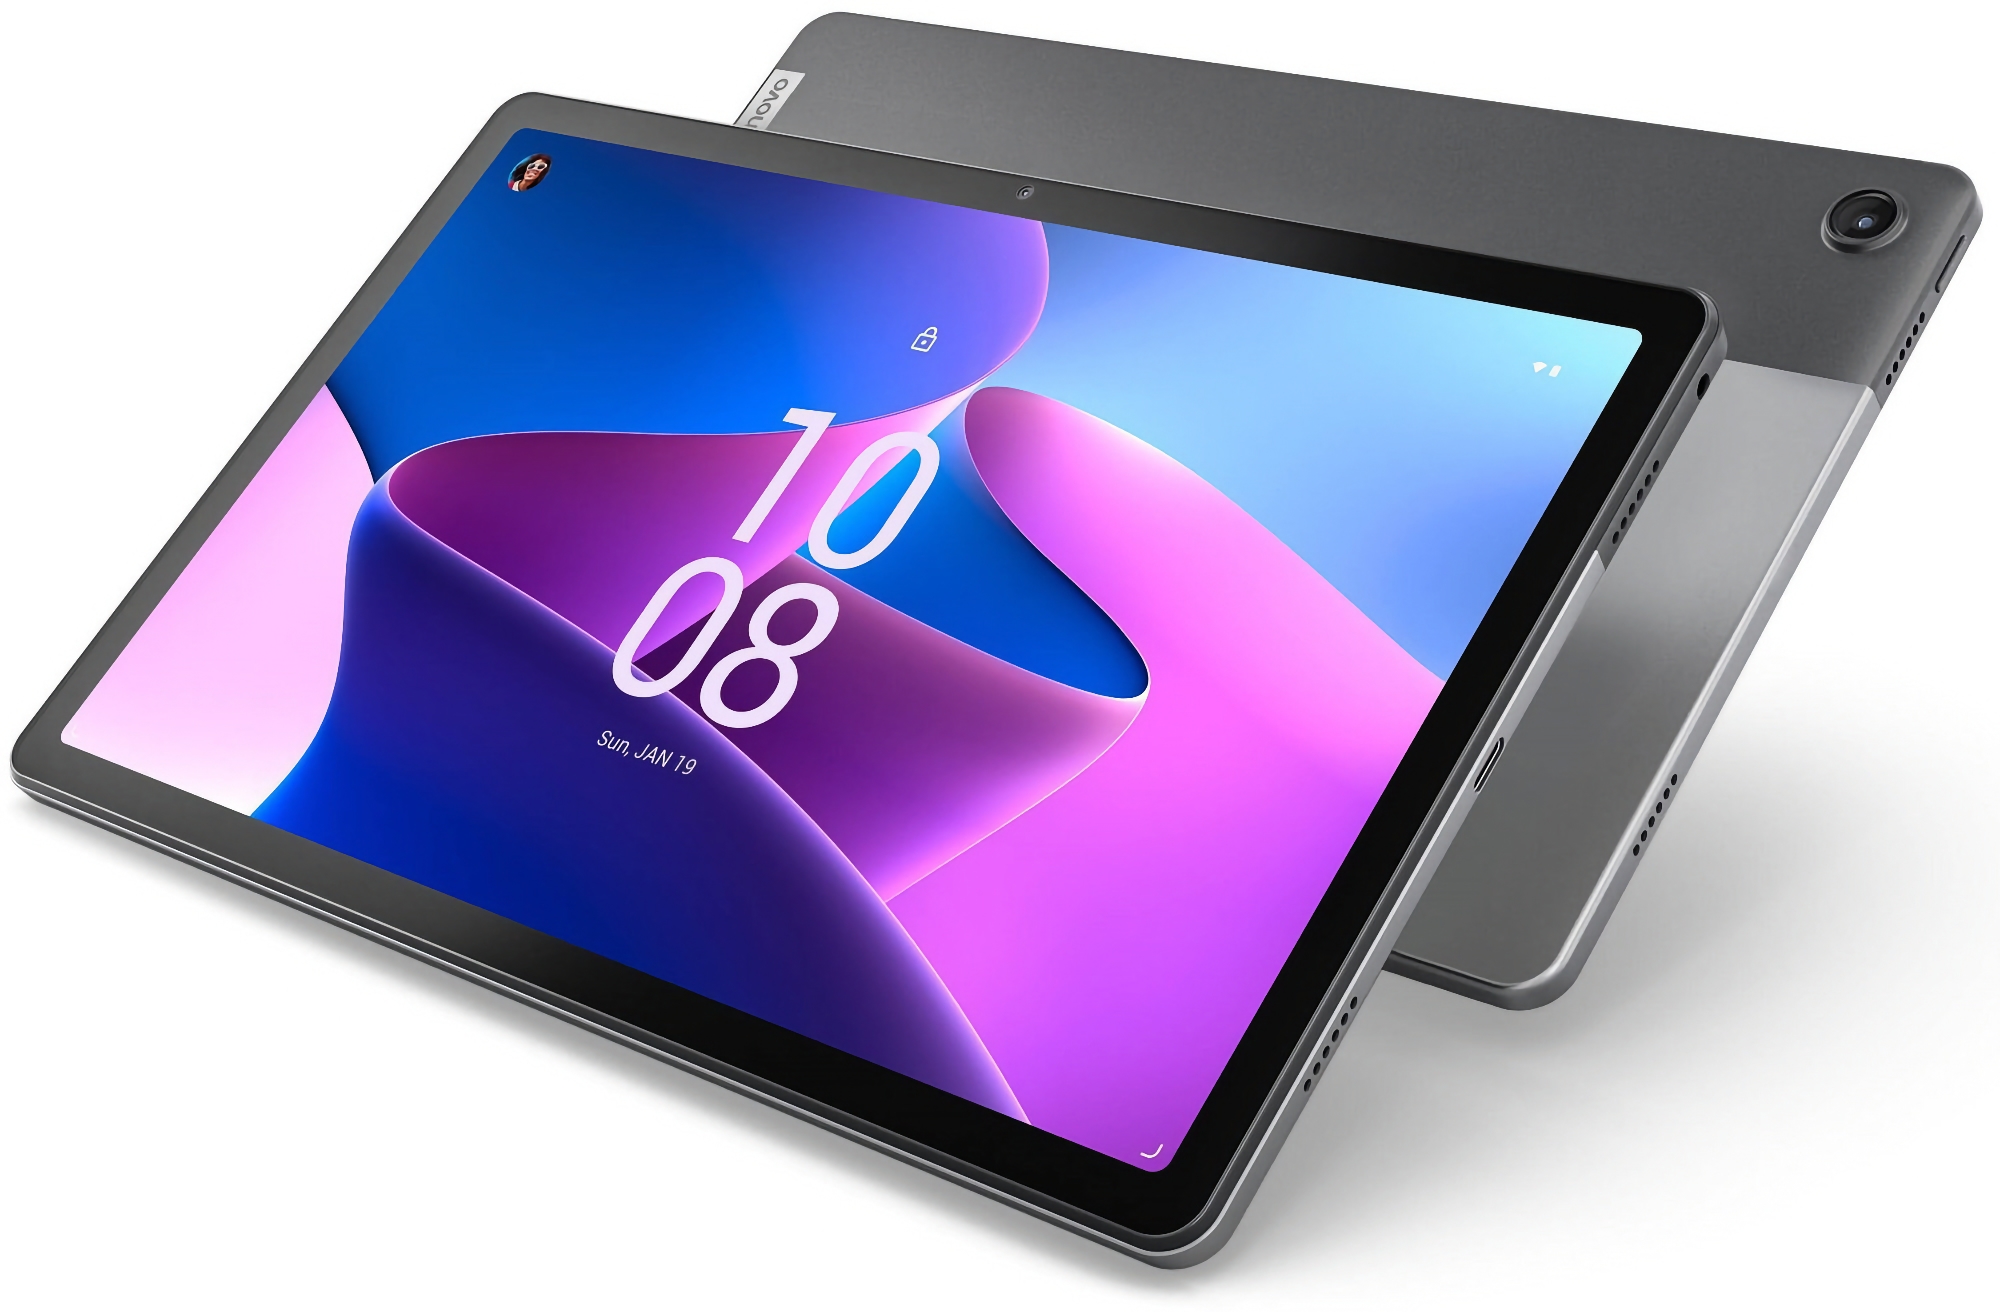 Lenovo Tab M10 Plus (3. Generation) bei Amazon: Tablet mit 10,6-Zoll-Display und MediaTek Helio G80-Chip für $149 ($40 Rabatt)